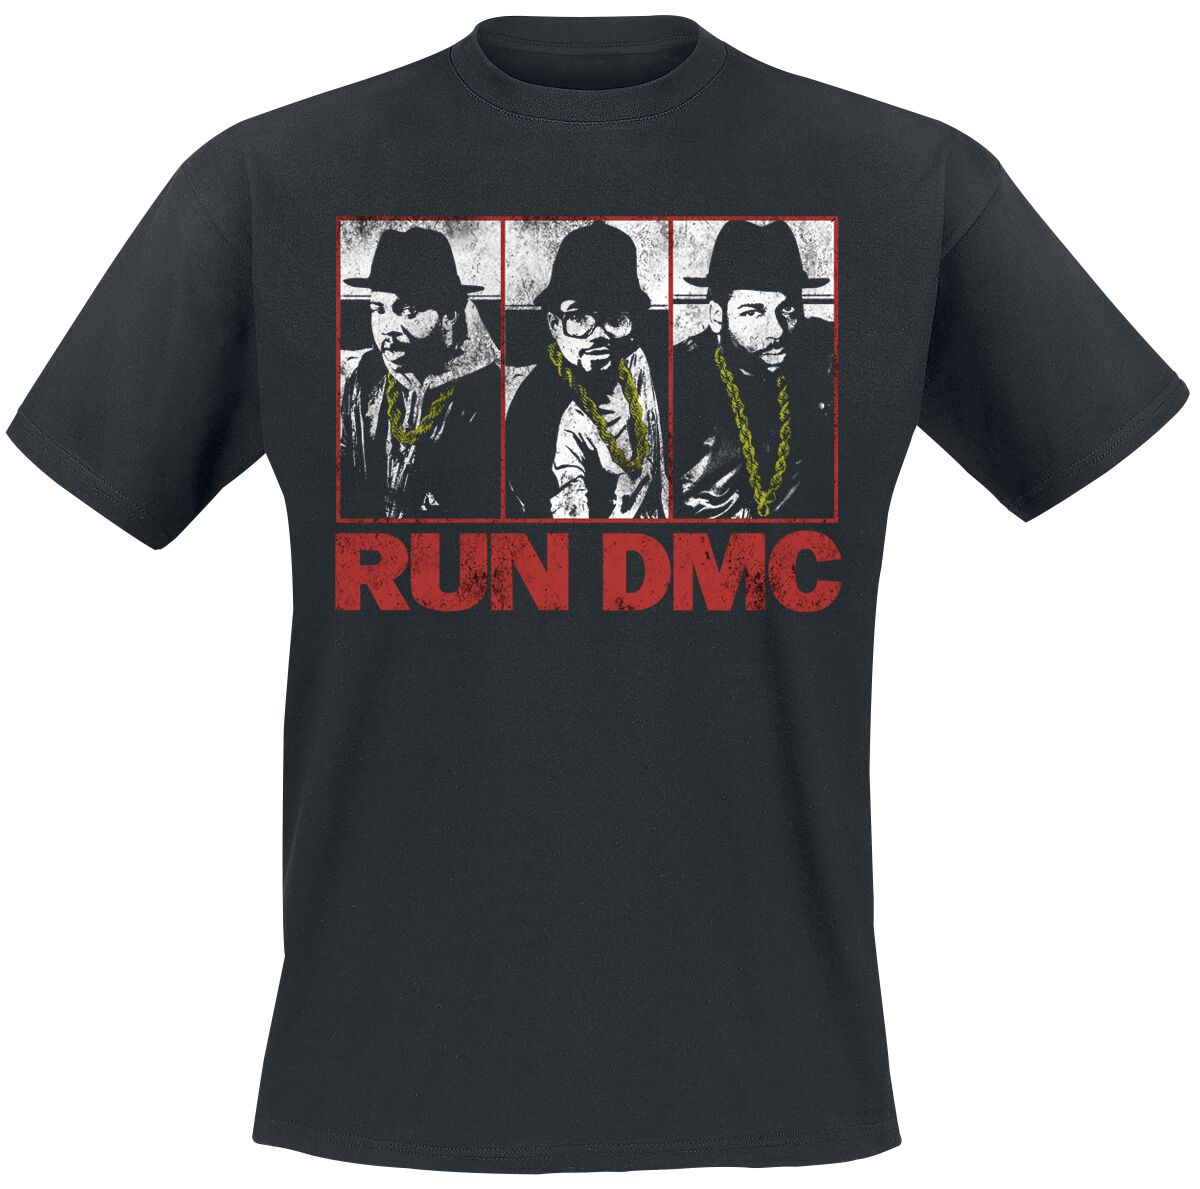 T-Shirt Manches courtes de Run DMC - Photo Poster - S à 3XL - pour Homme - noir